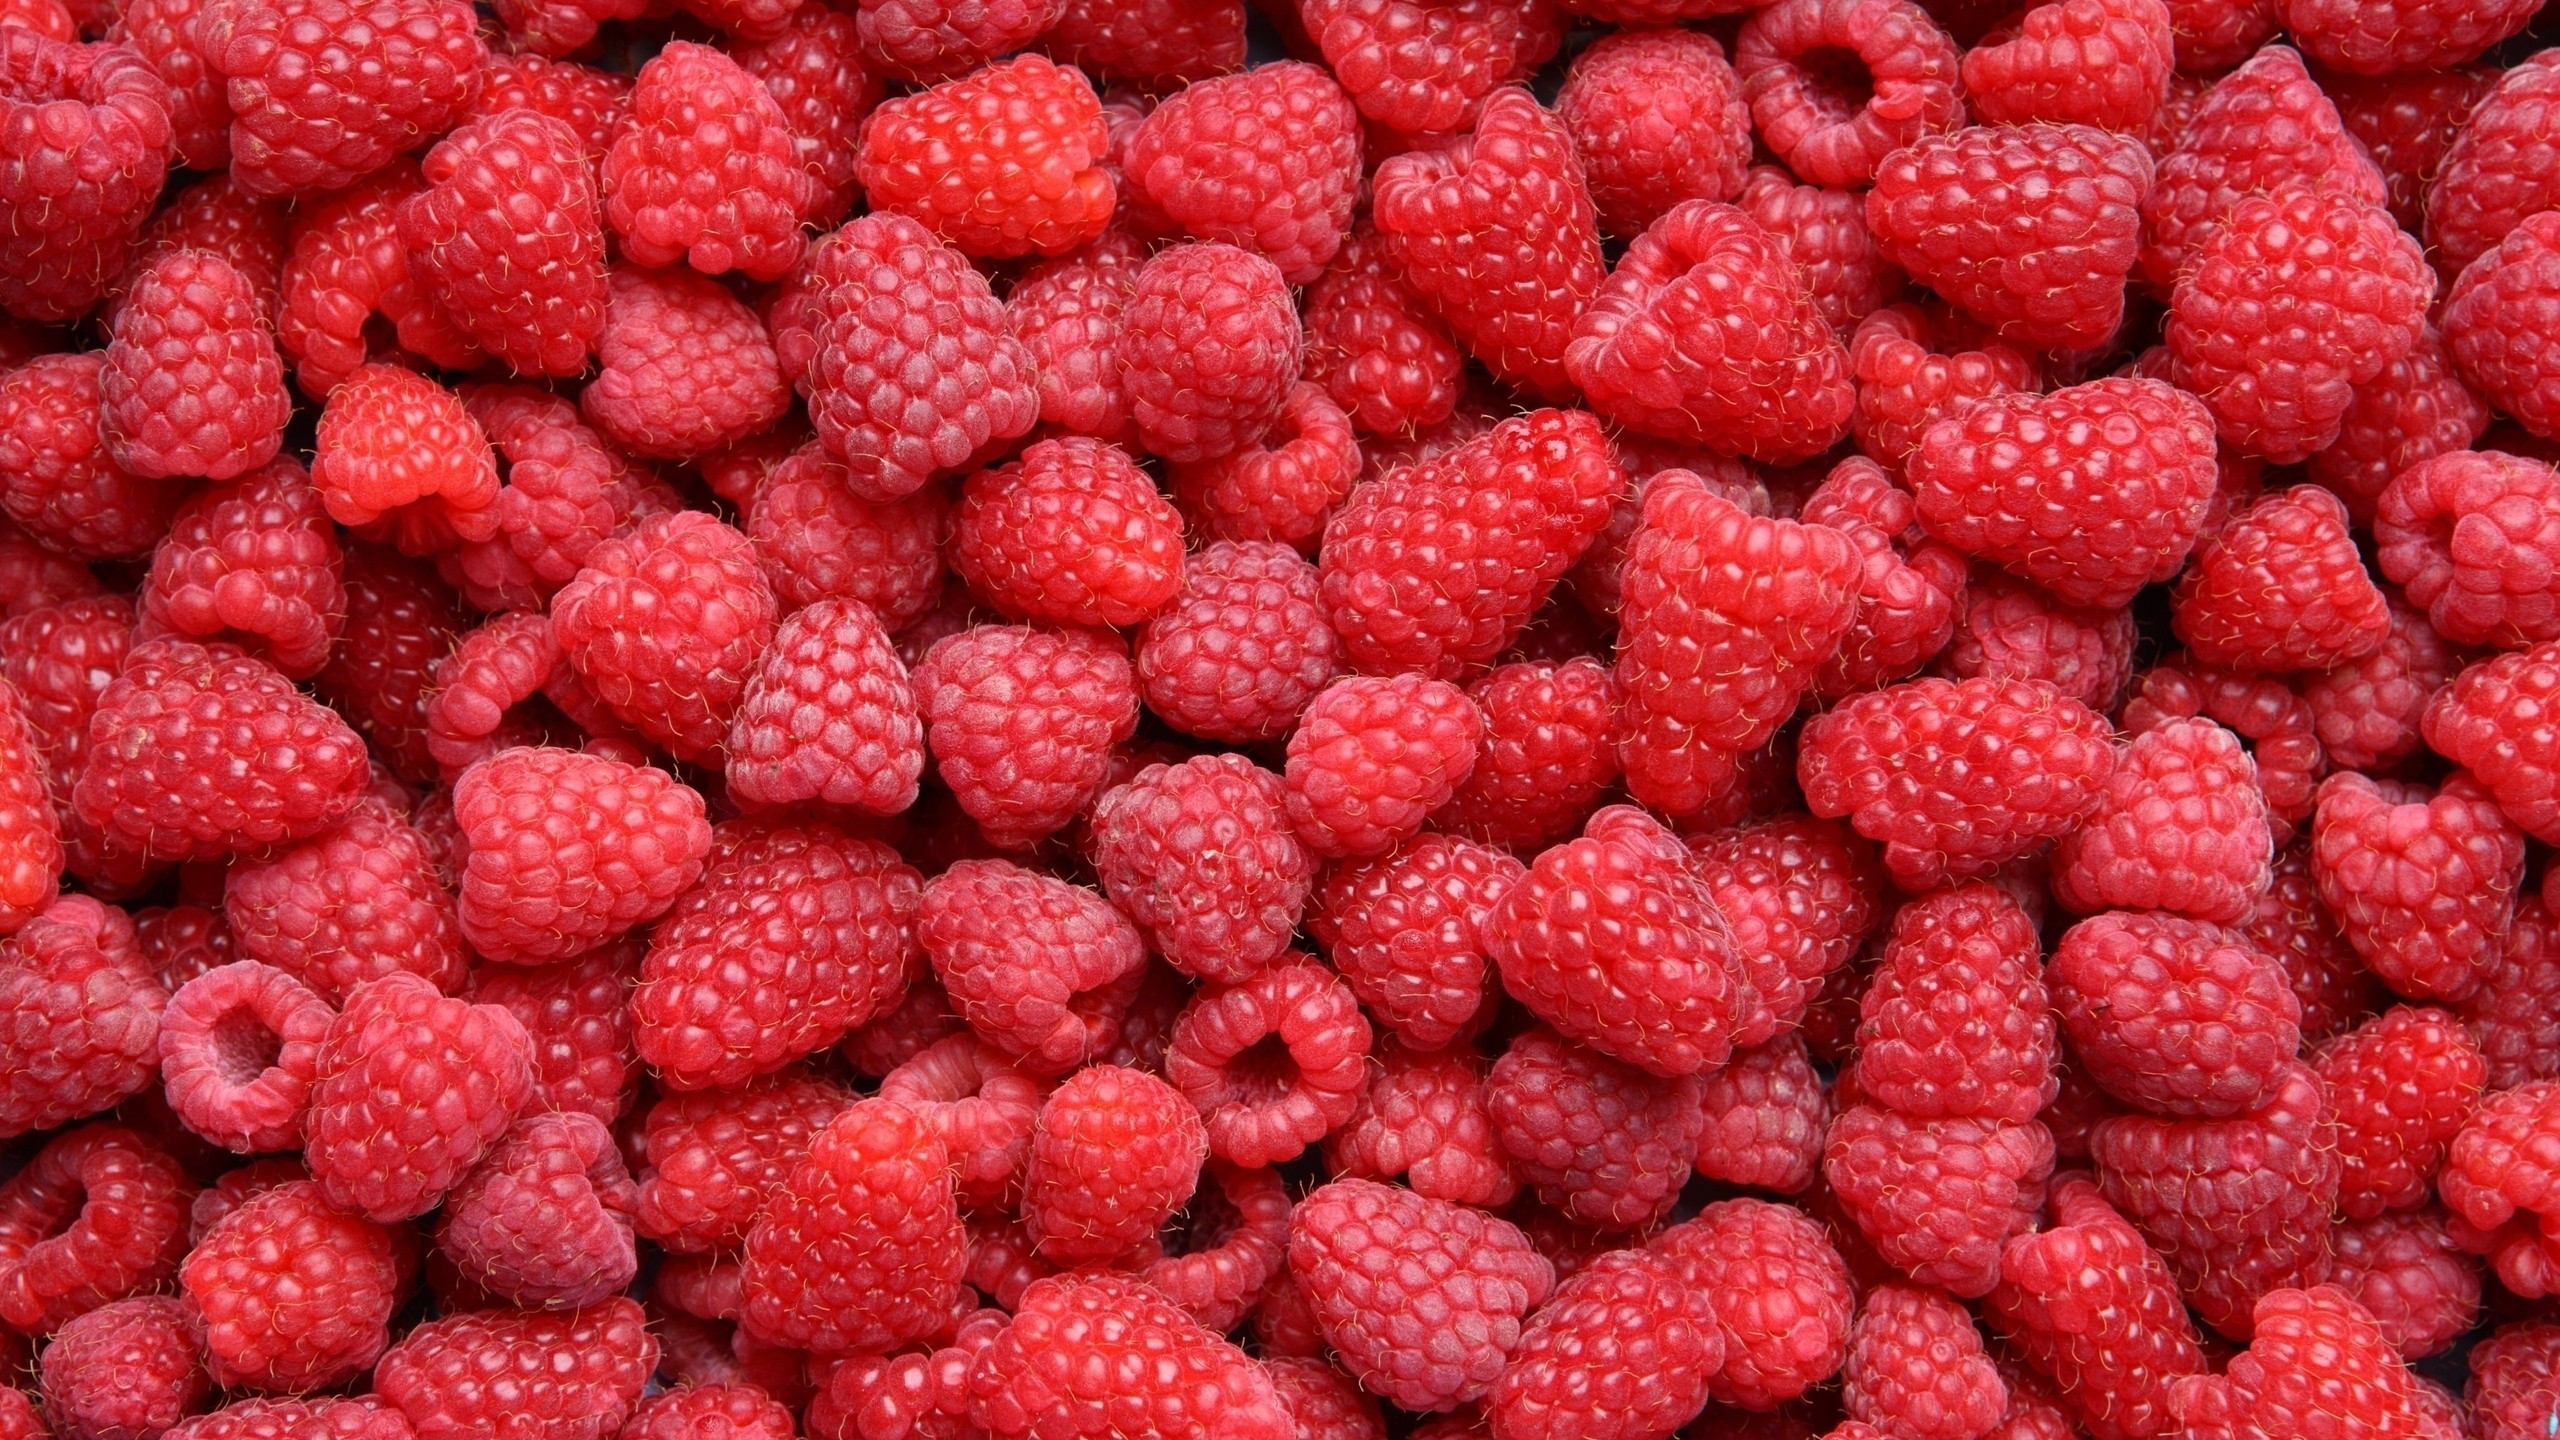 General 2560x1440 food raspberries berries fruit red